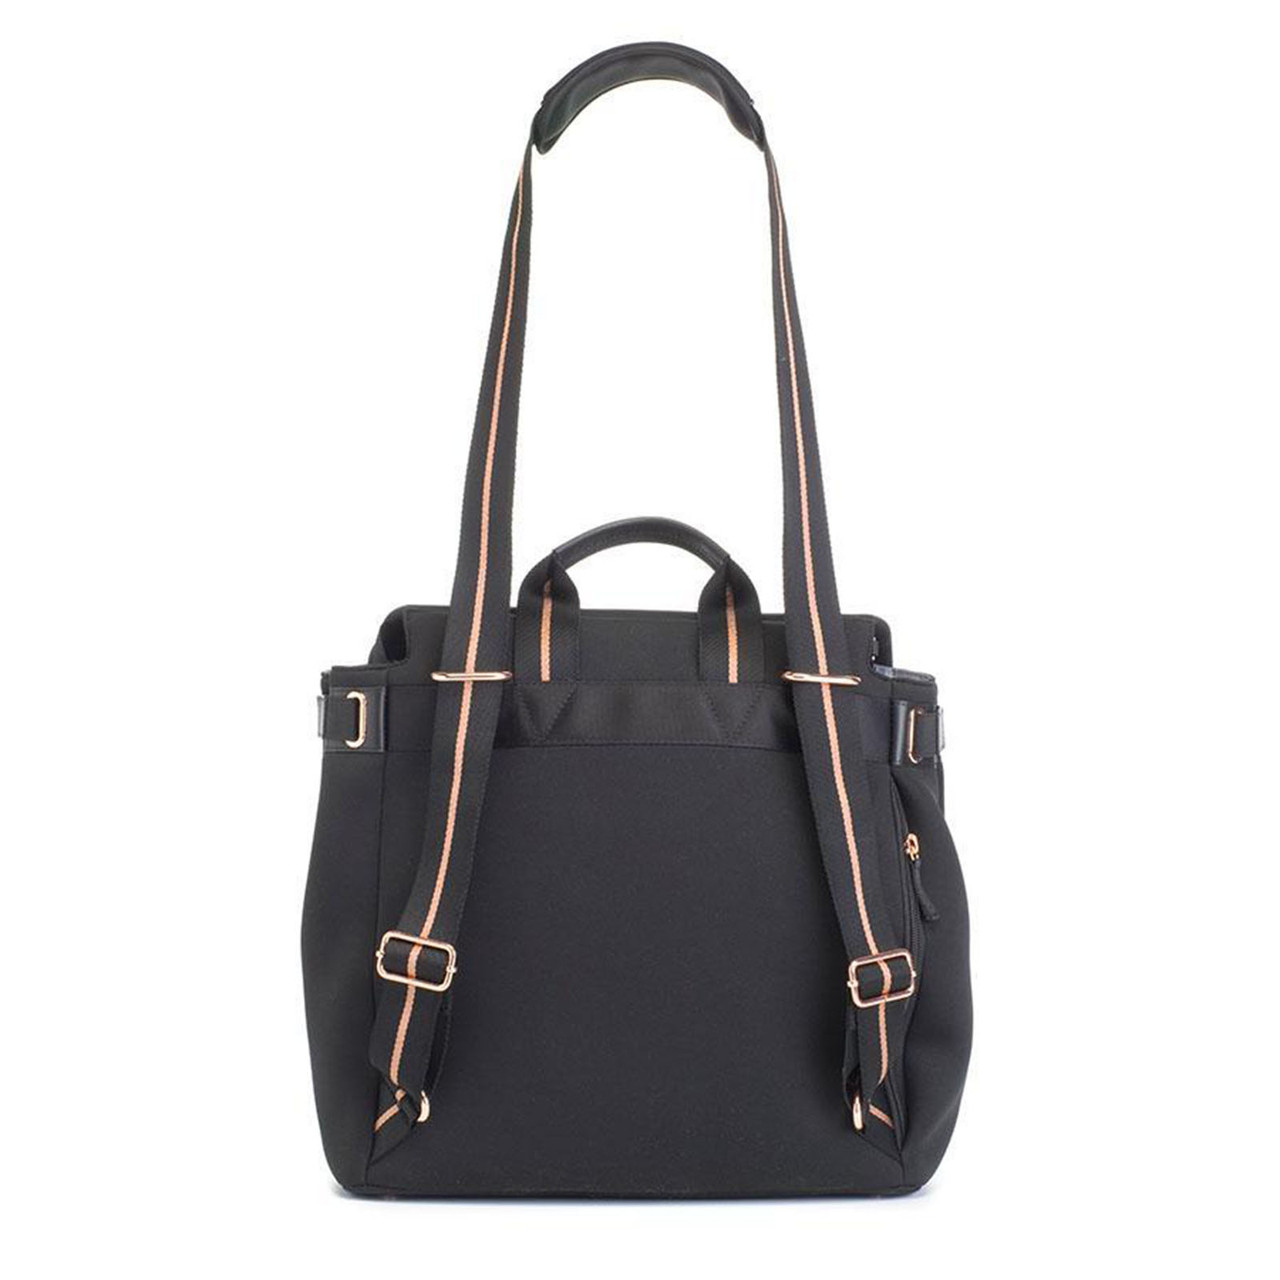 Storksak St James Nappy Bag Backpack - Scuba Black. Shop Baby Bags Online